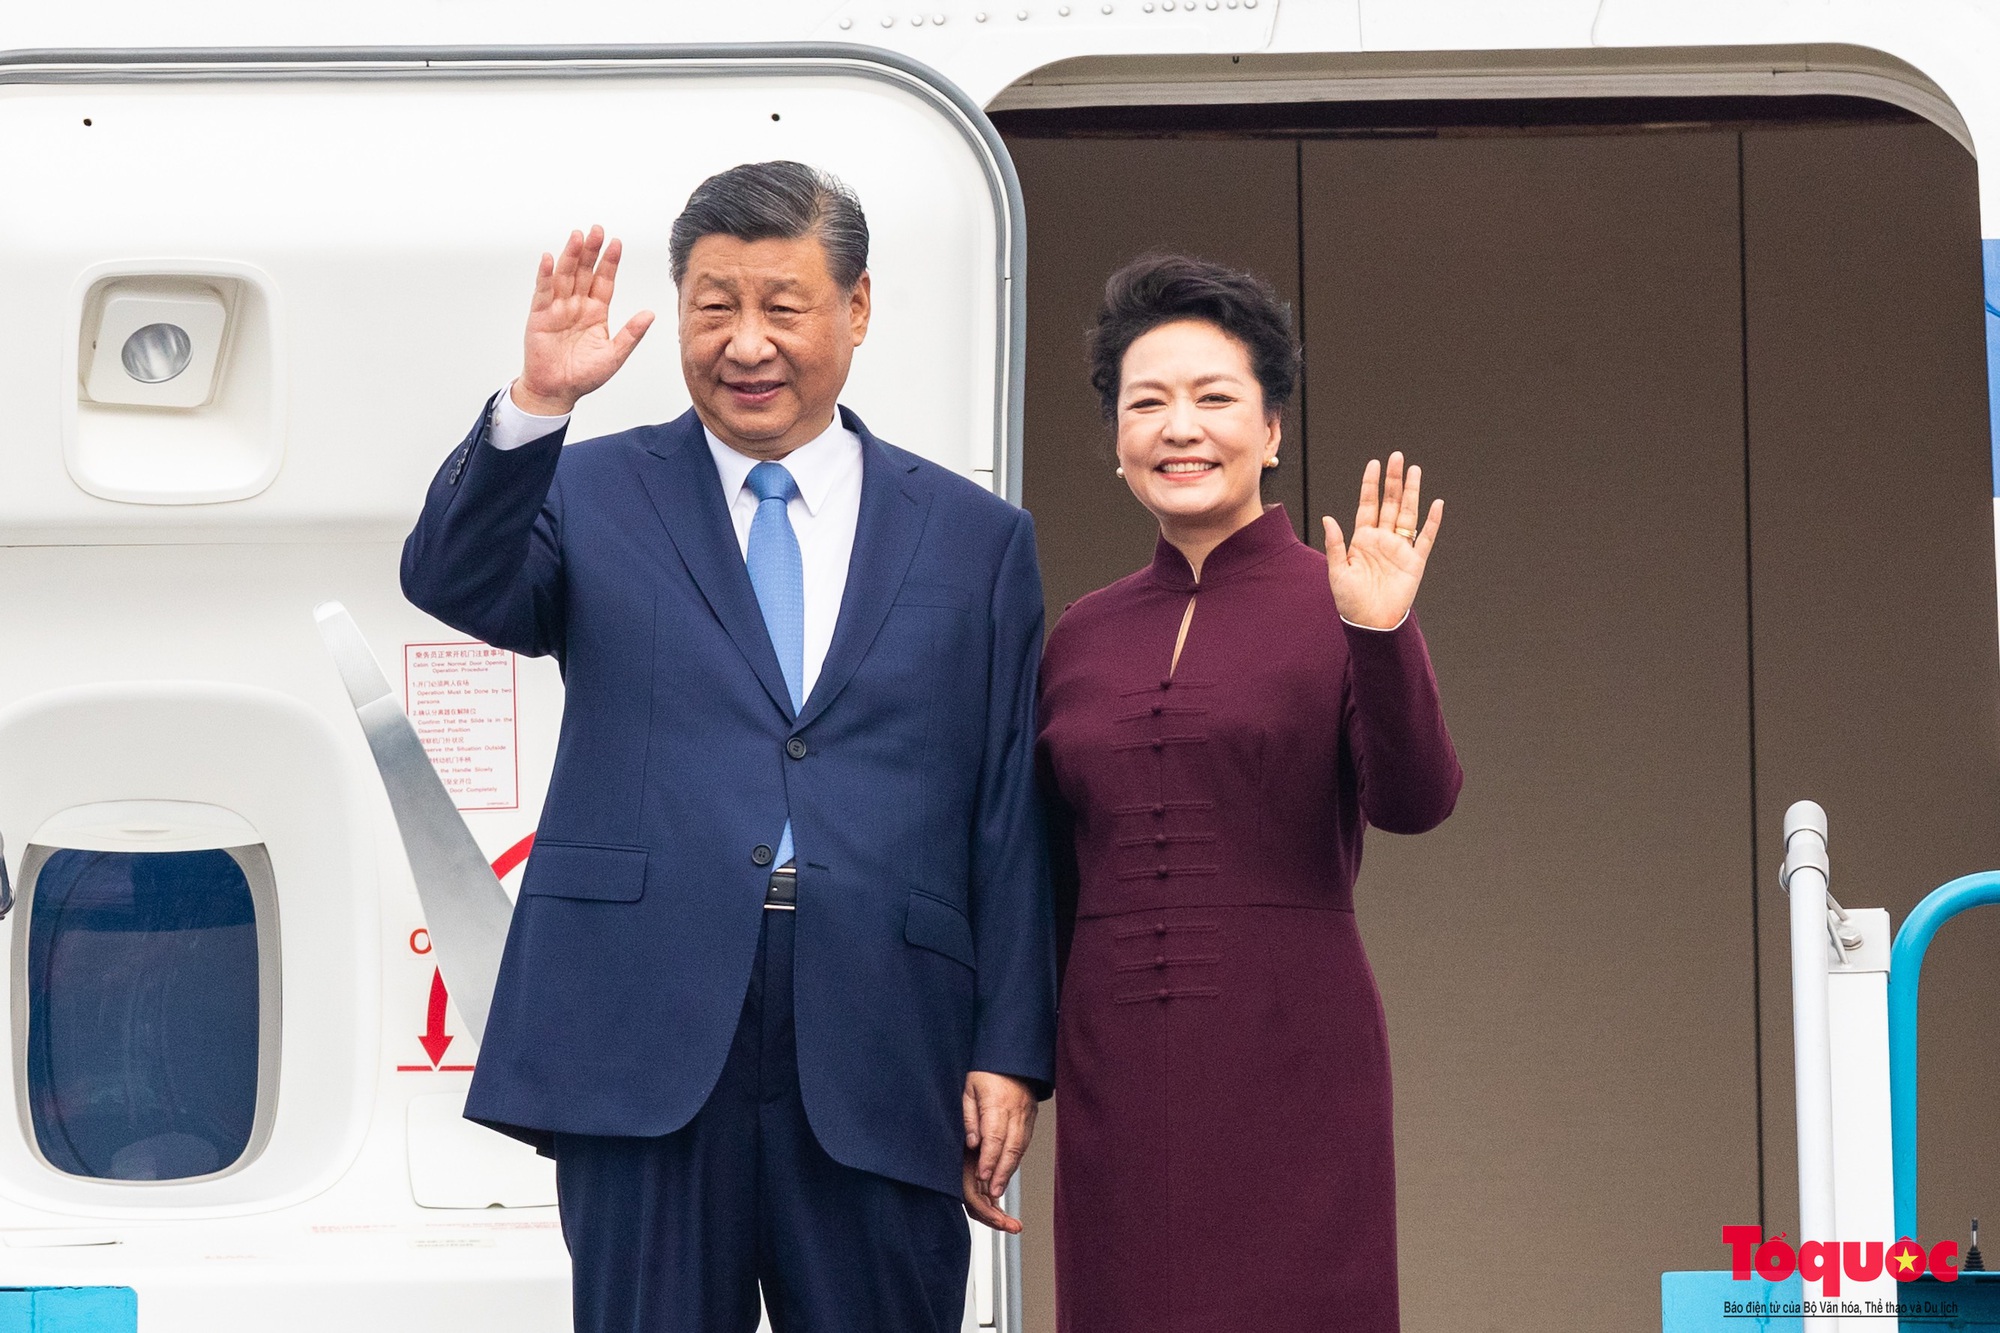 Tổng Bí thư - Chủ tịch nước Trung Quốc Tập Cận Bình và phu nhân đến Hà Nội, bắt đầu thăm Việt Nam - Ảnh 2.